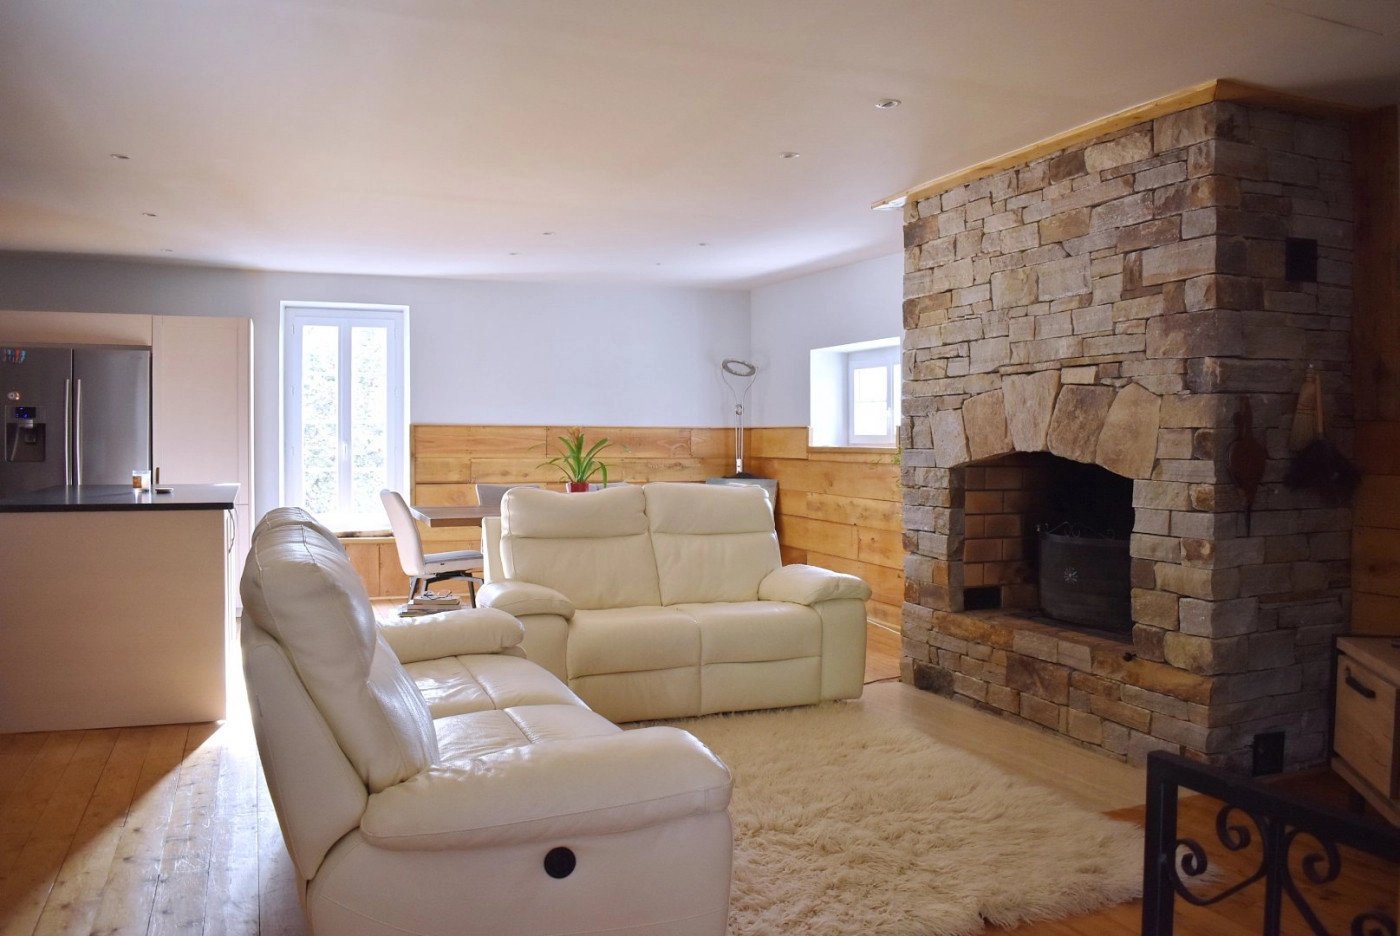 Living-room Fireplace Wooden floor